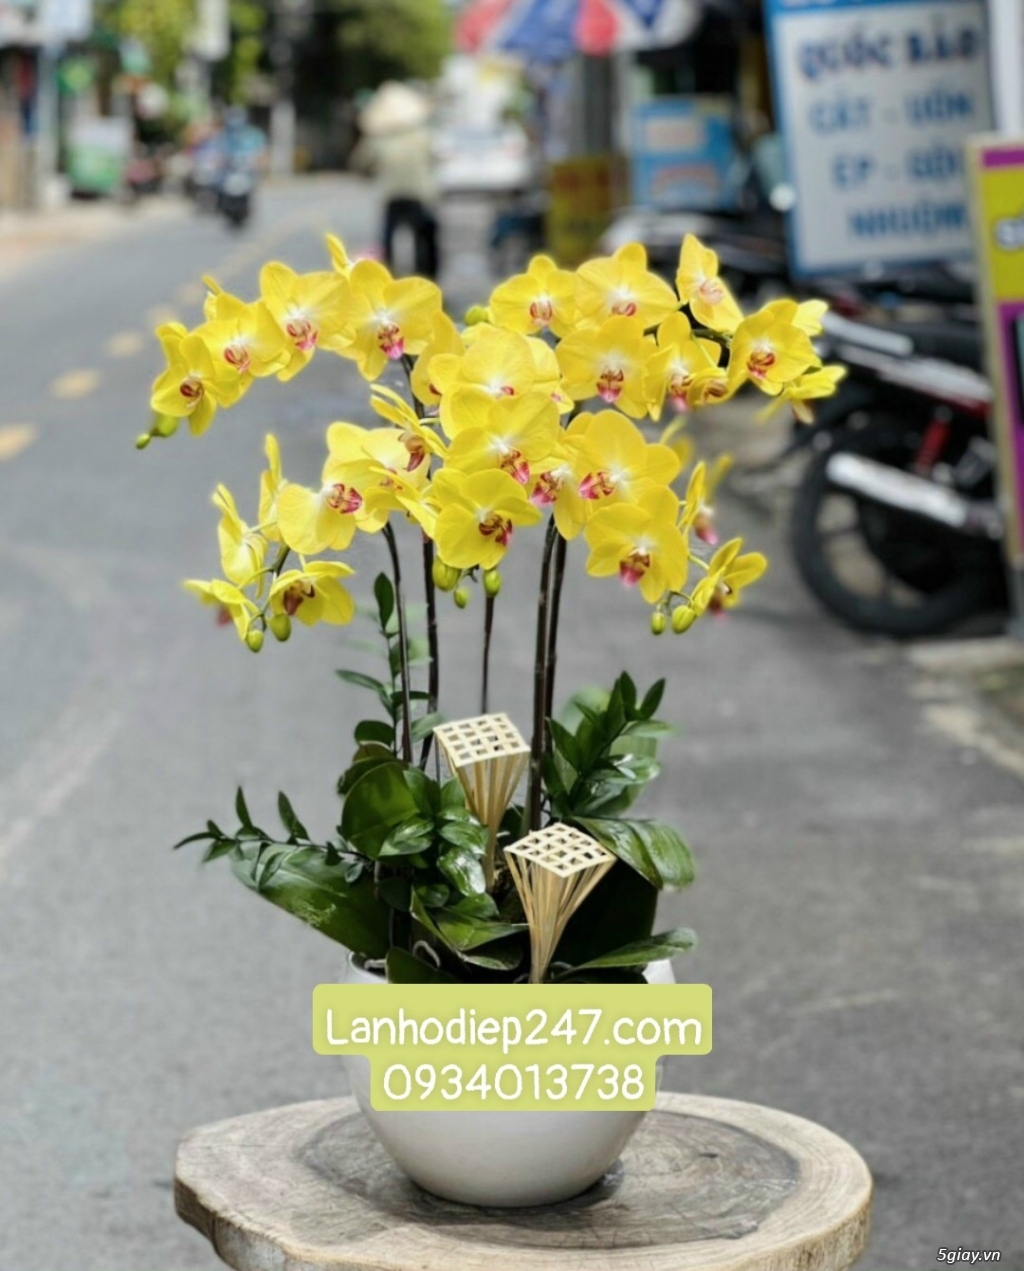 Shop hoa tươi Lan Hồ Điệp 247 tại Đức Hòa Long An 0934013738 - 10